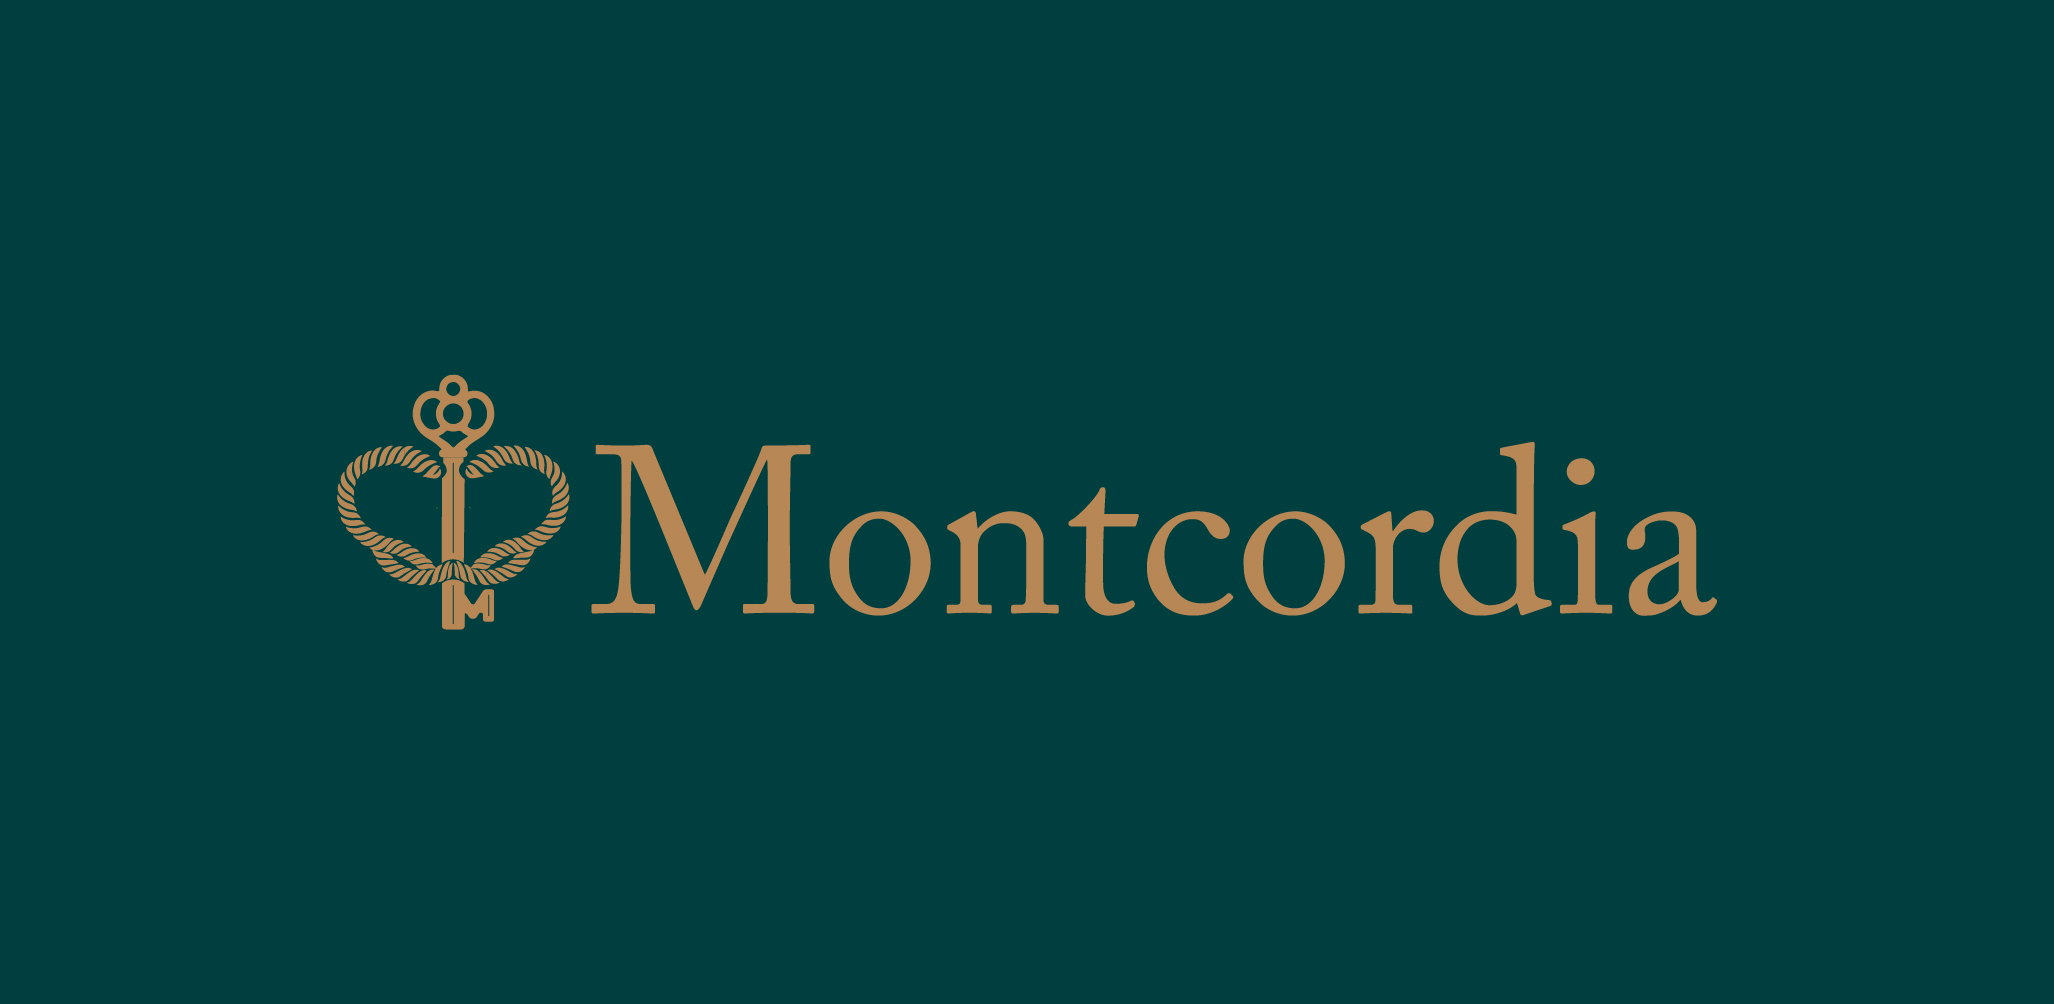 Montcordia